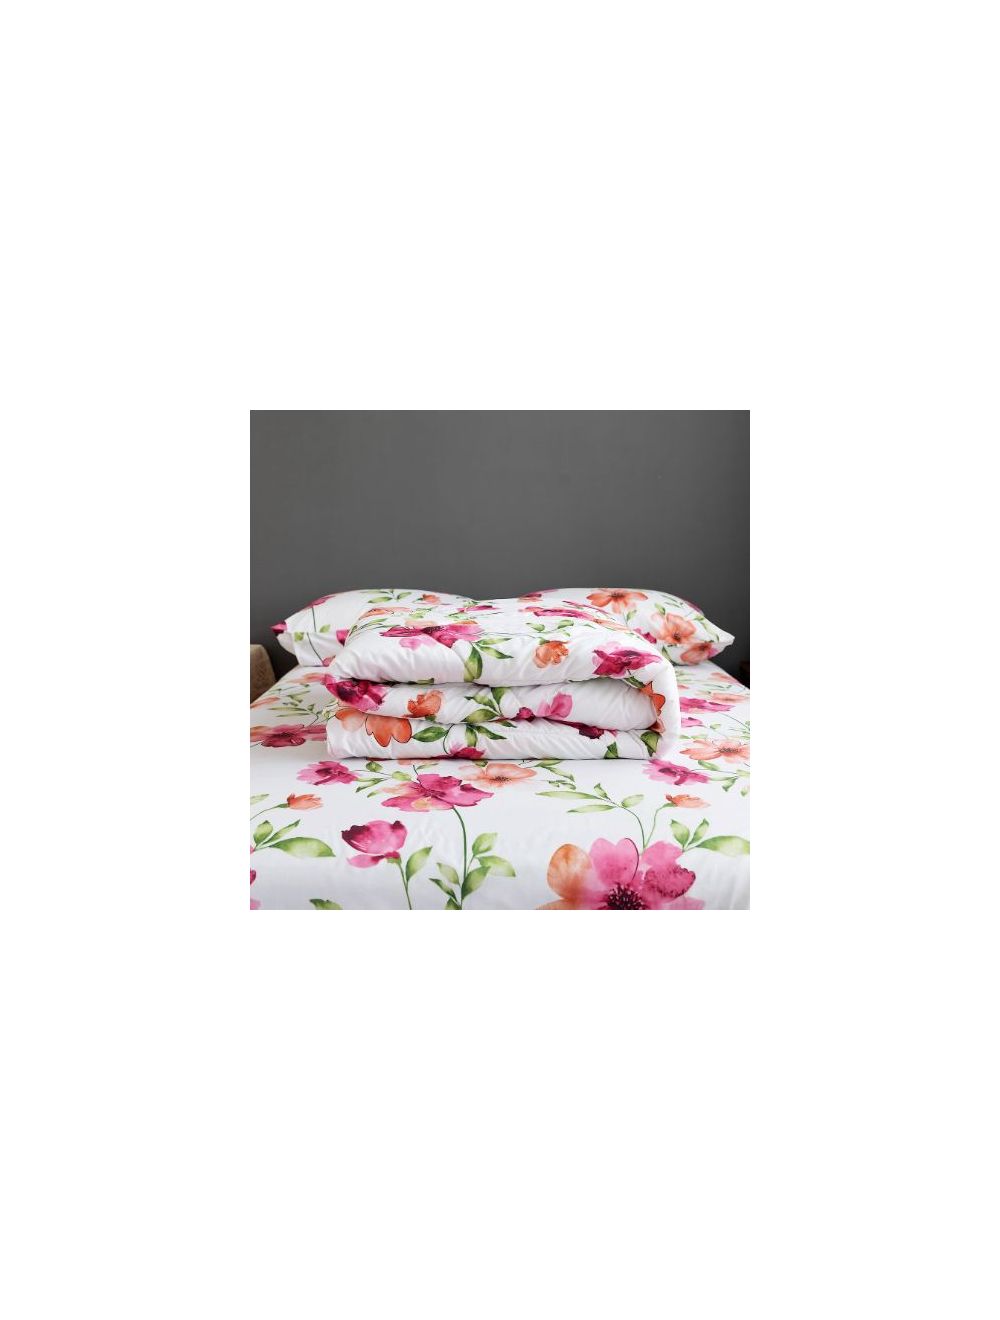 DEALS FOR LESS - Comforter Set Of 4 Pieces, Floral Design Cloud White Color-CFT41-05